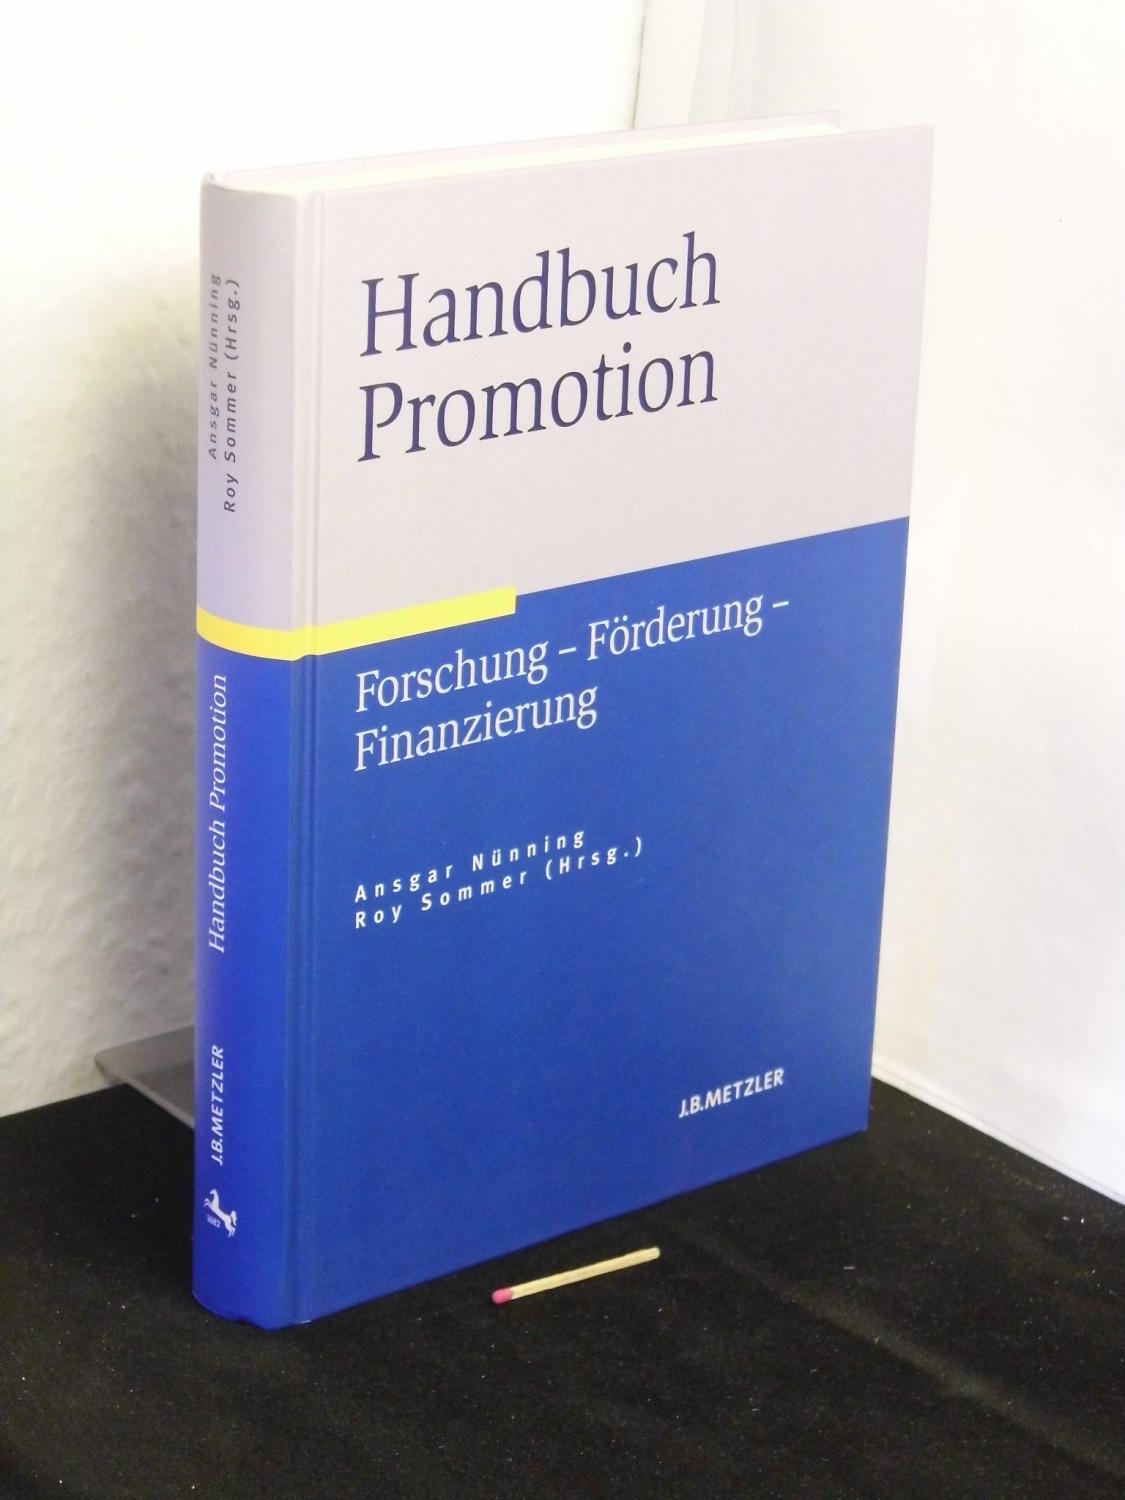 Handbuch Promotion - Forschung - Förderung - Finanzierung - - Nünning, Ansgar und Roy Sommer (Herausgeber) -